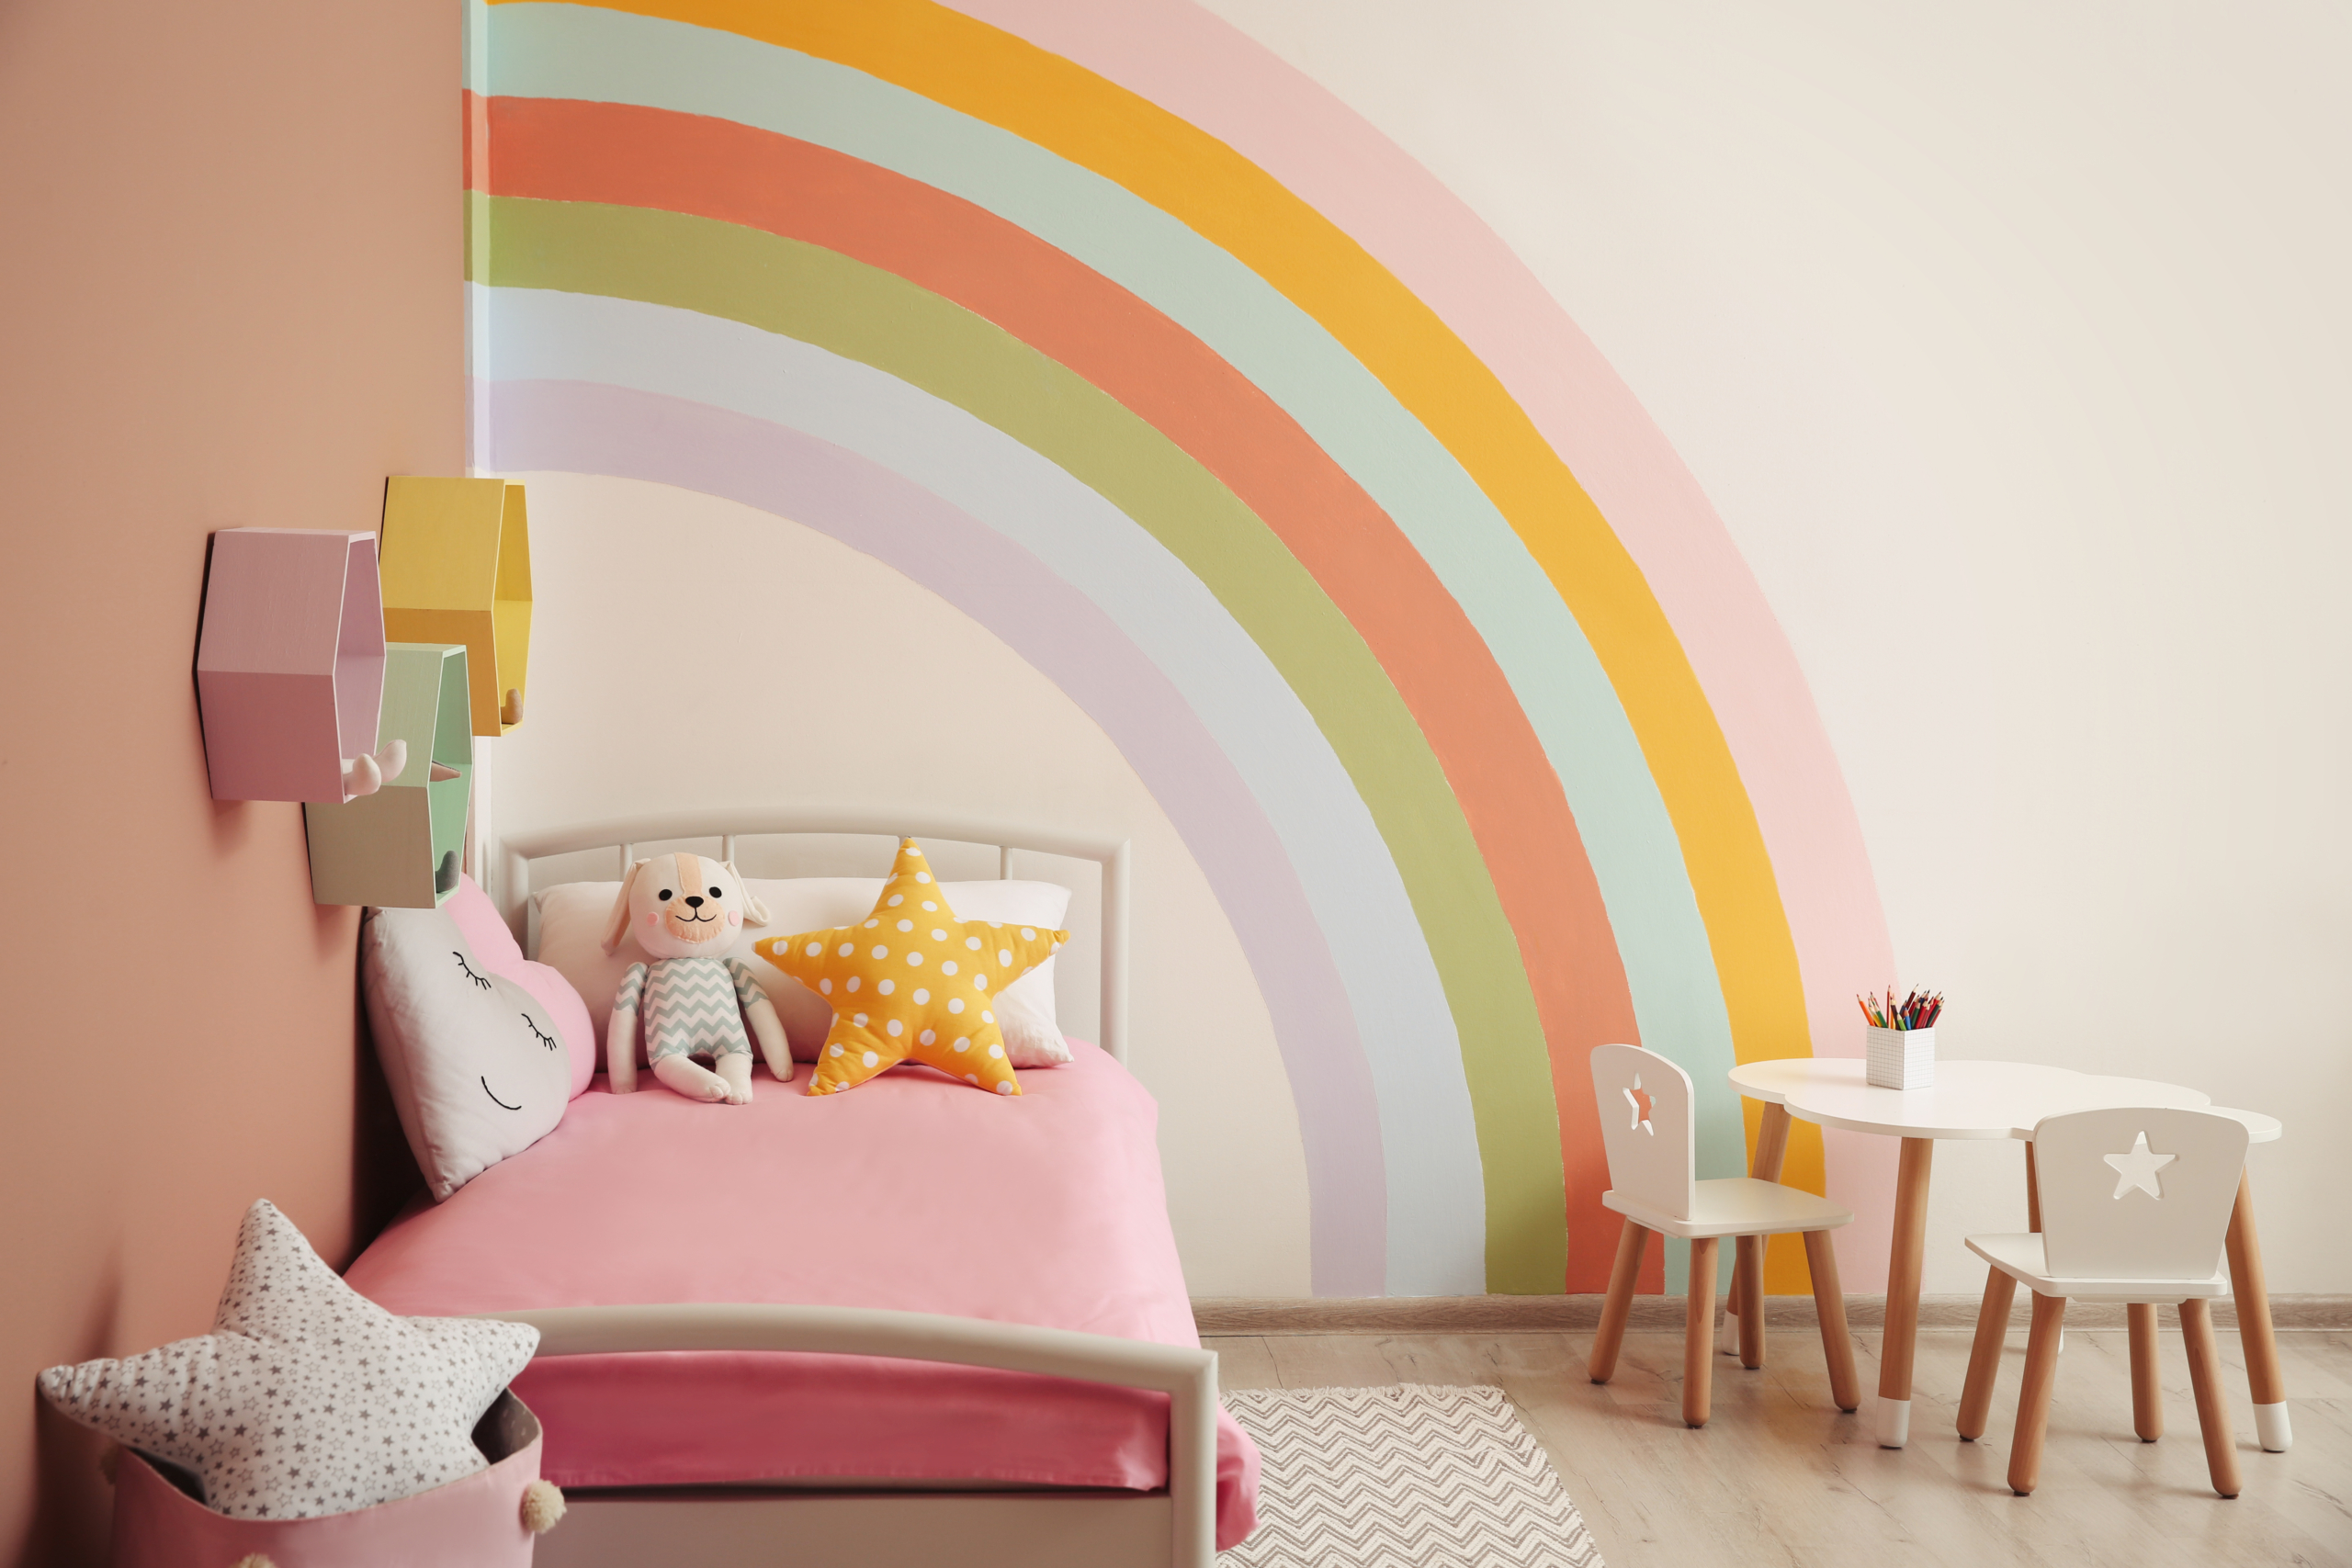 Phòng dành cho trẻ em có thể tạo chút màu sắc trẻ con hơn. (Ảnh: Shutterstock)